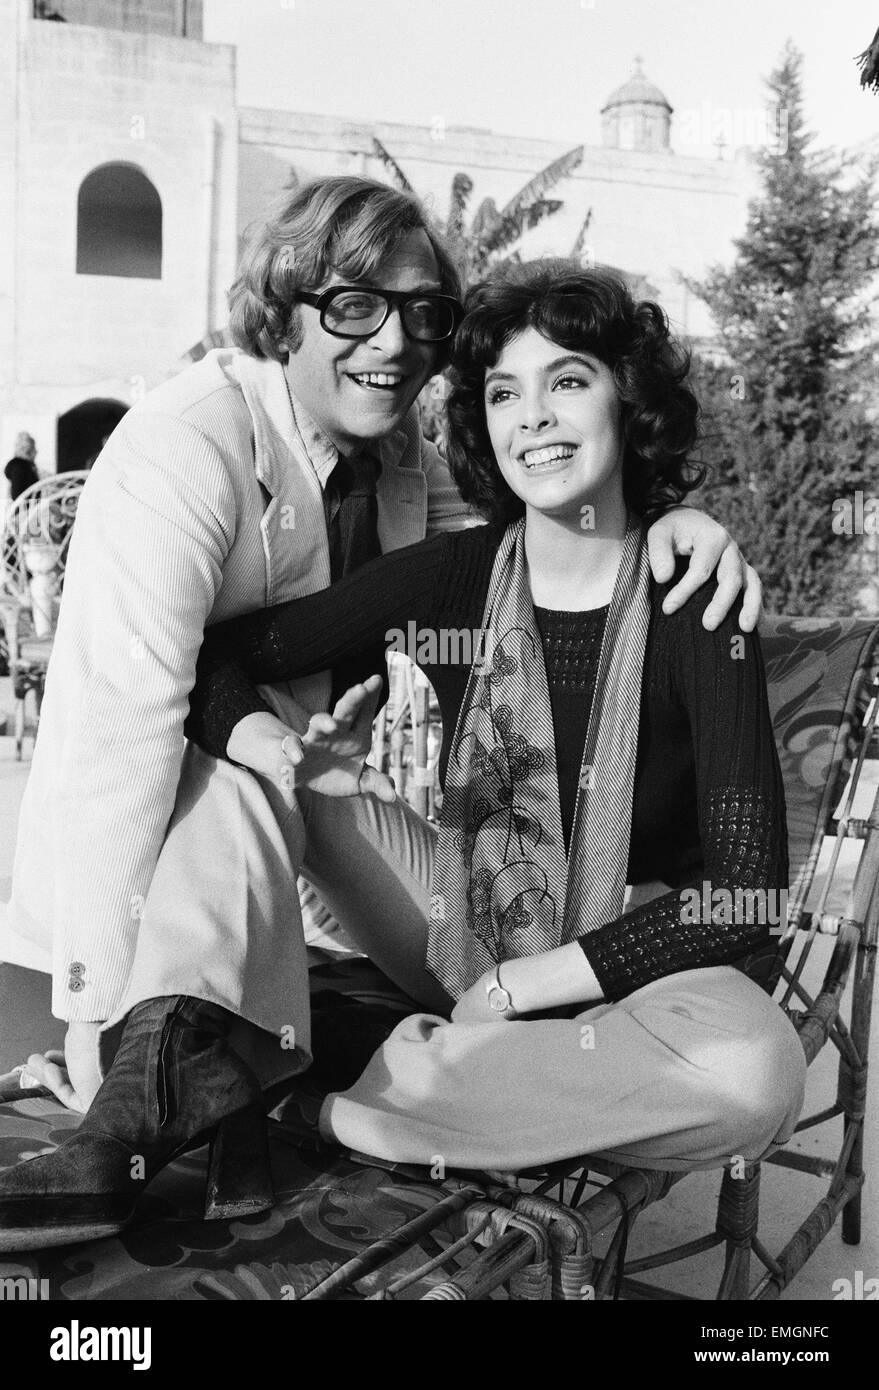 Attore Michael Caine con Nadia Cassini sul set del loro nuovo film pasta durante le riprese in Malta. Il 17 gennaio 1972. Foto Stock